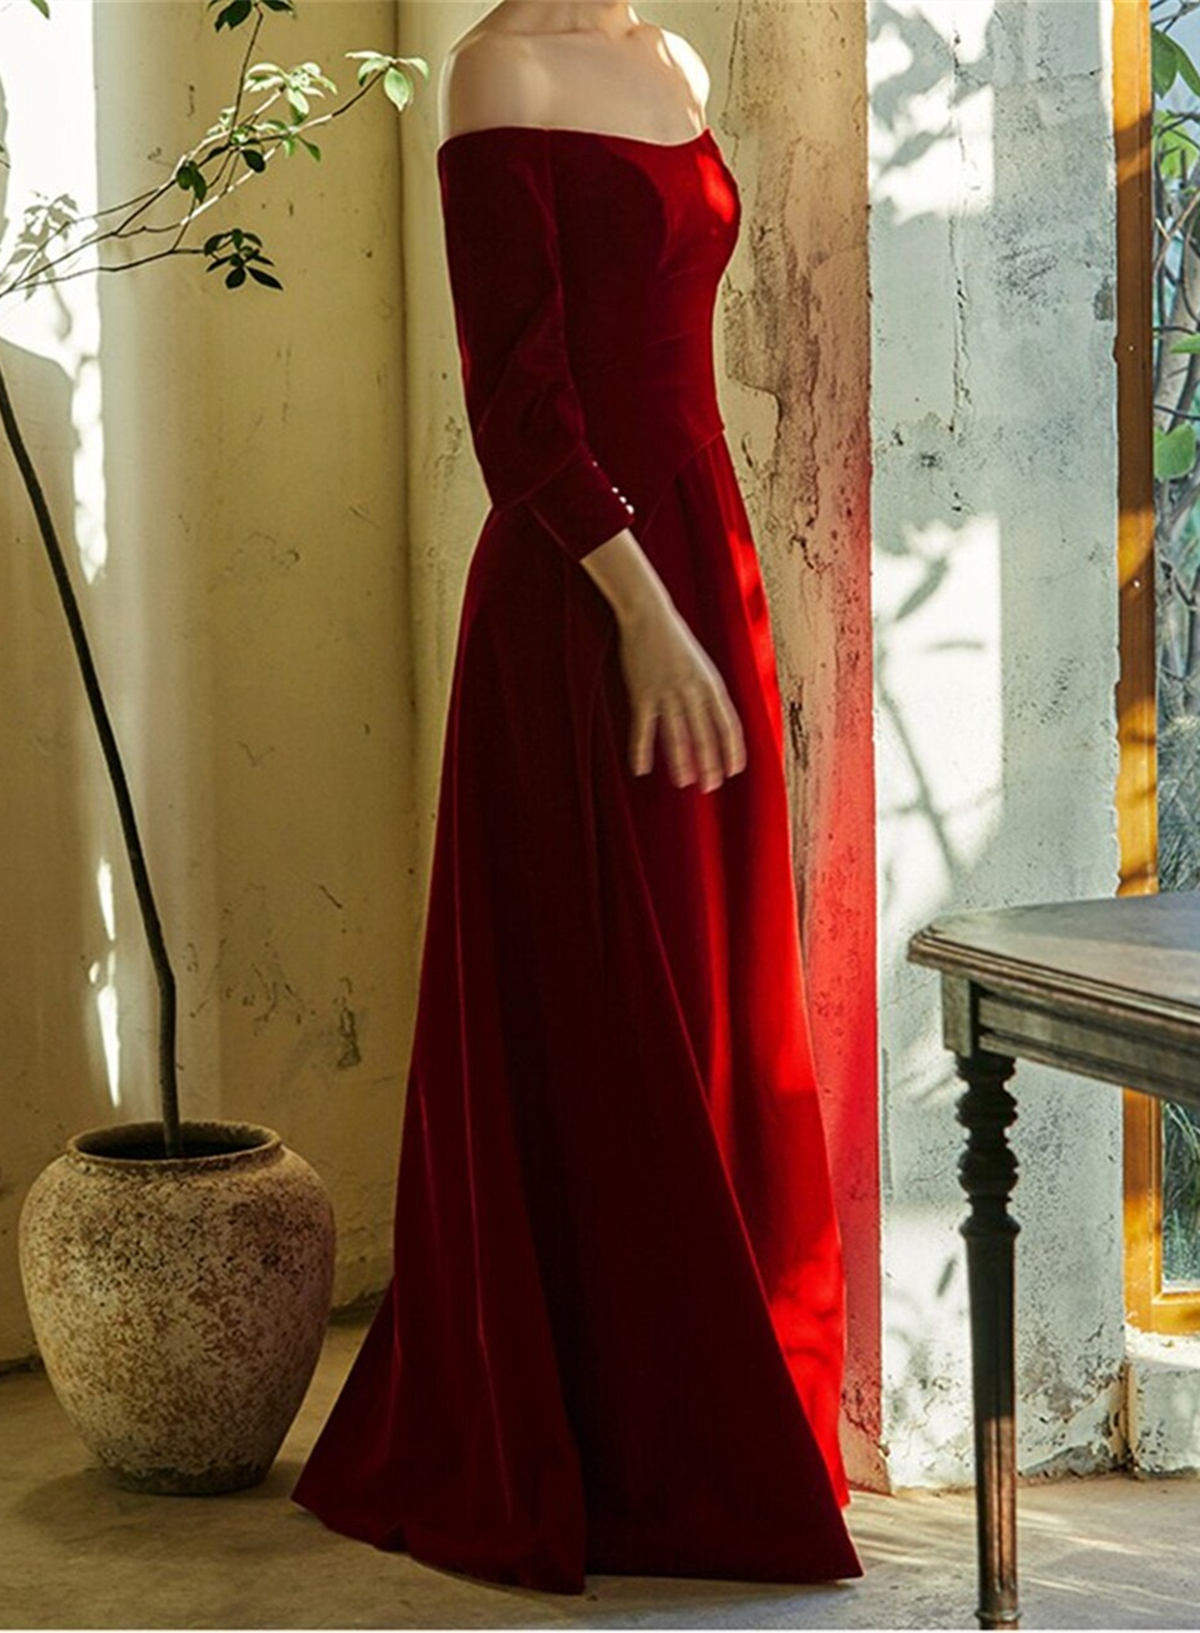 Red off Shoulder Spandex Long Formal Dress, Red A-line Elegant Prom Dress Party Dress